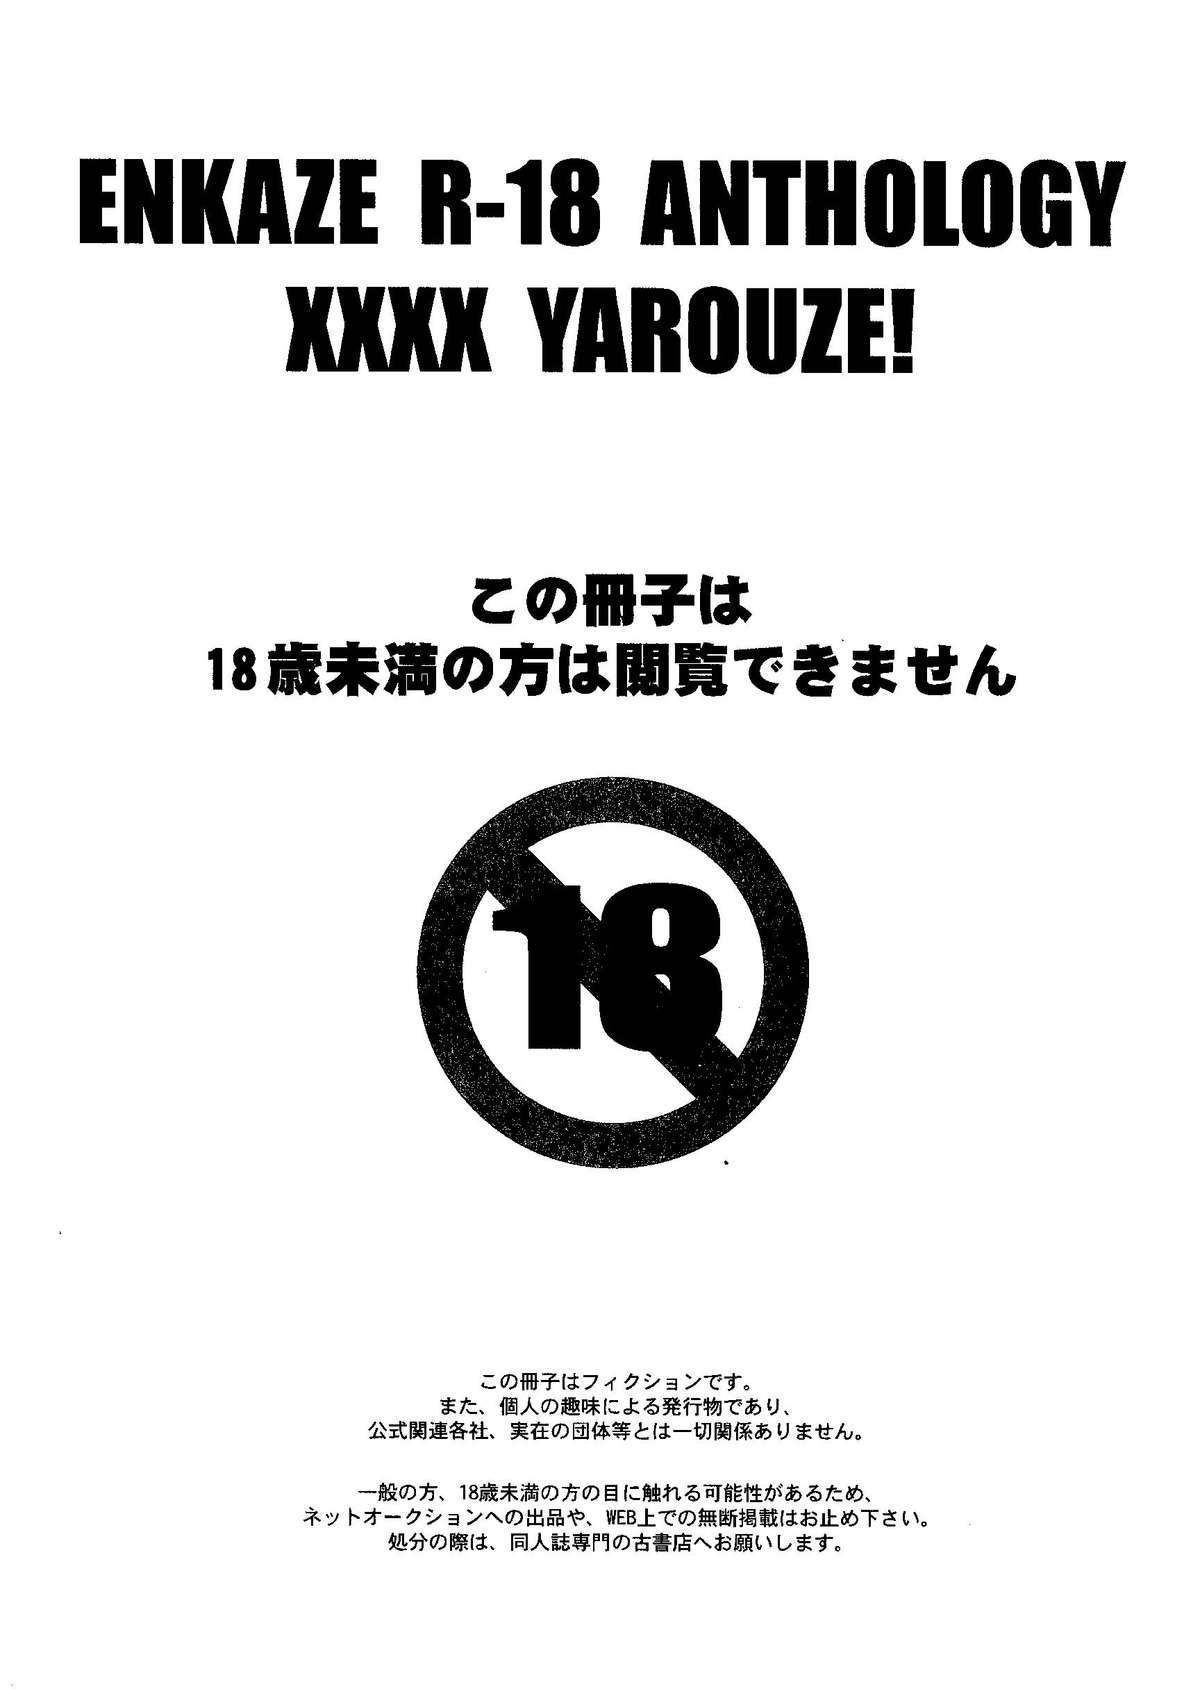 Amateur Sex Tapes Kirigakure Takaya (Aniki Otokodou) - ×××× Yarouze! (Inazuma Eleven) - Inazuma eleven Gay Dudes - Page 7